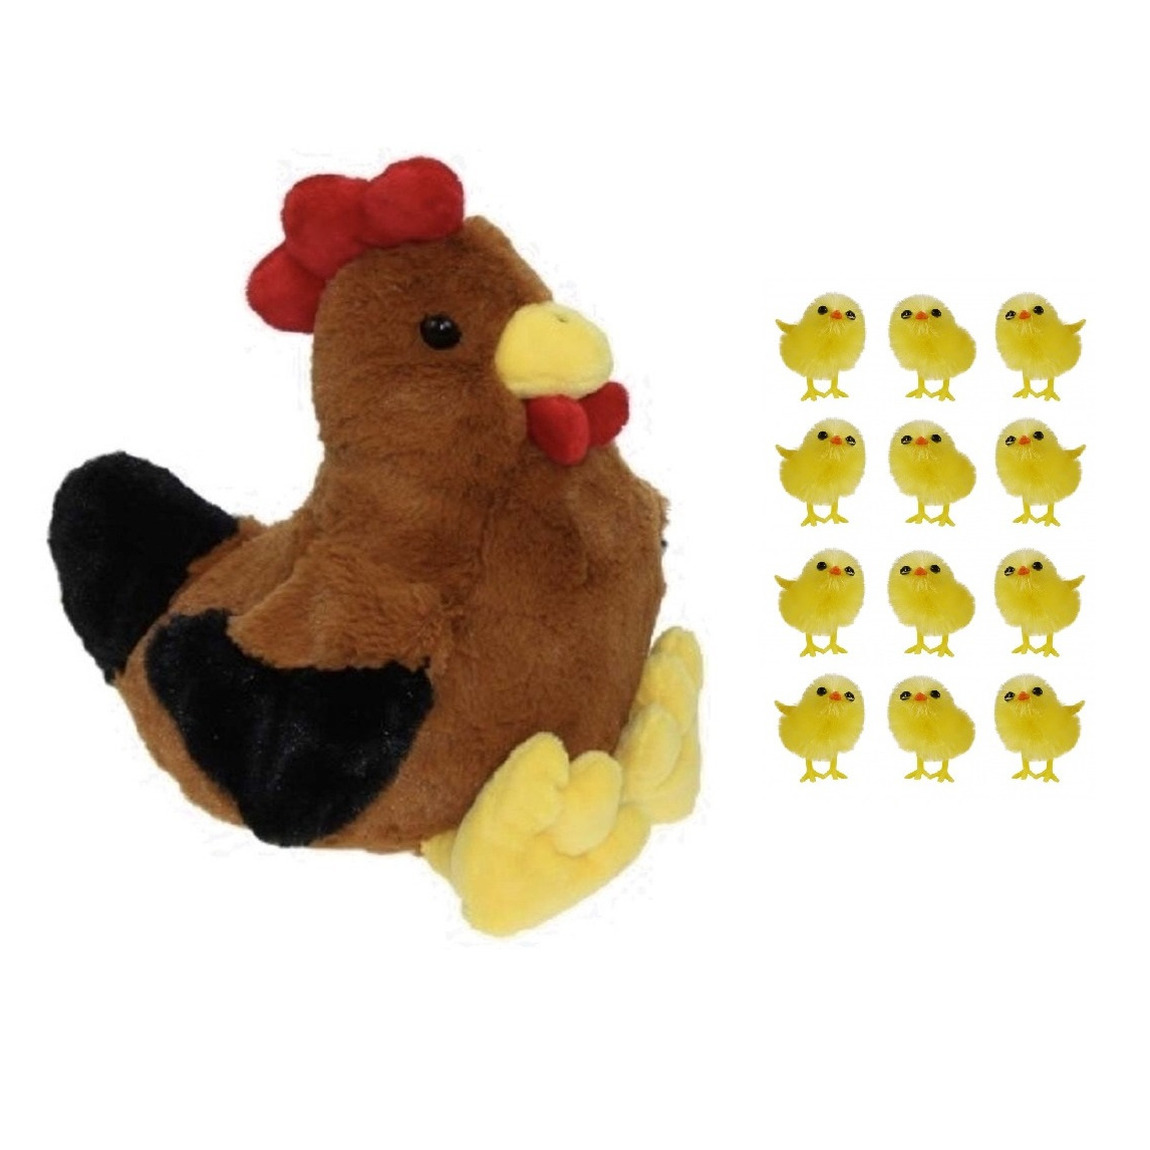 Pluche bruine kippen-hanen knuffel van 25 cm met 12x stuks mini kuikentjes 3,5 cm